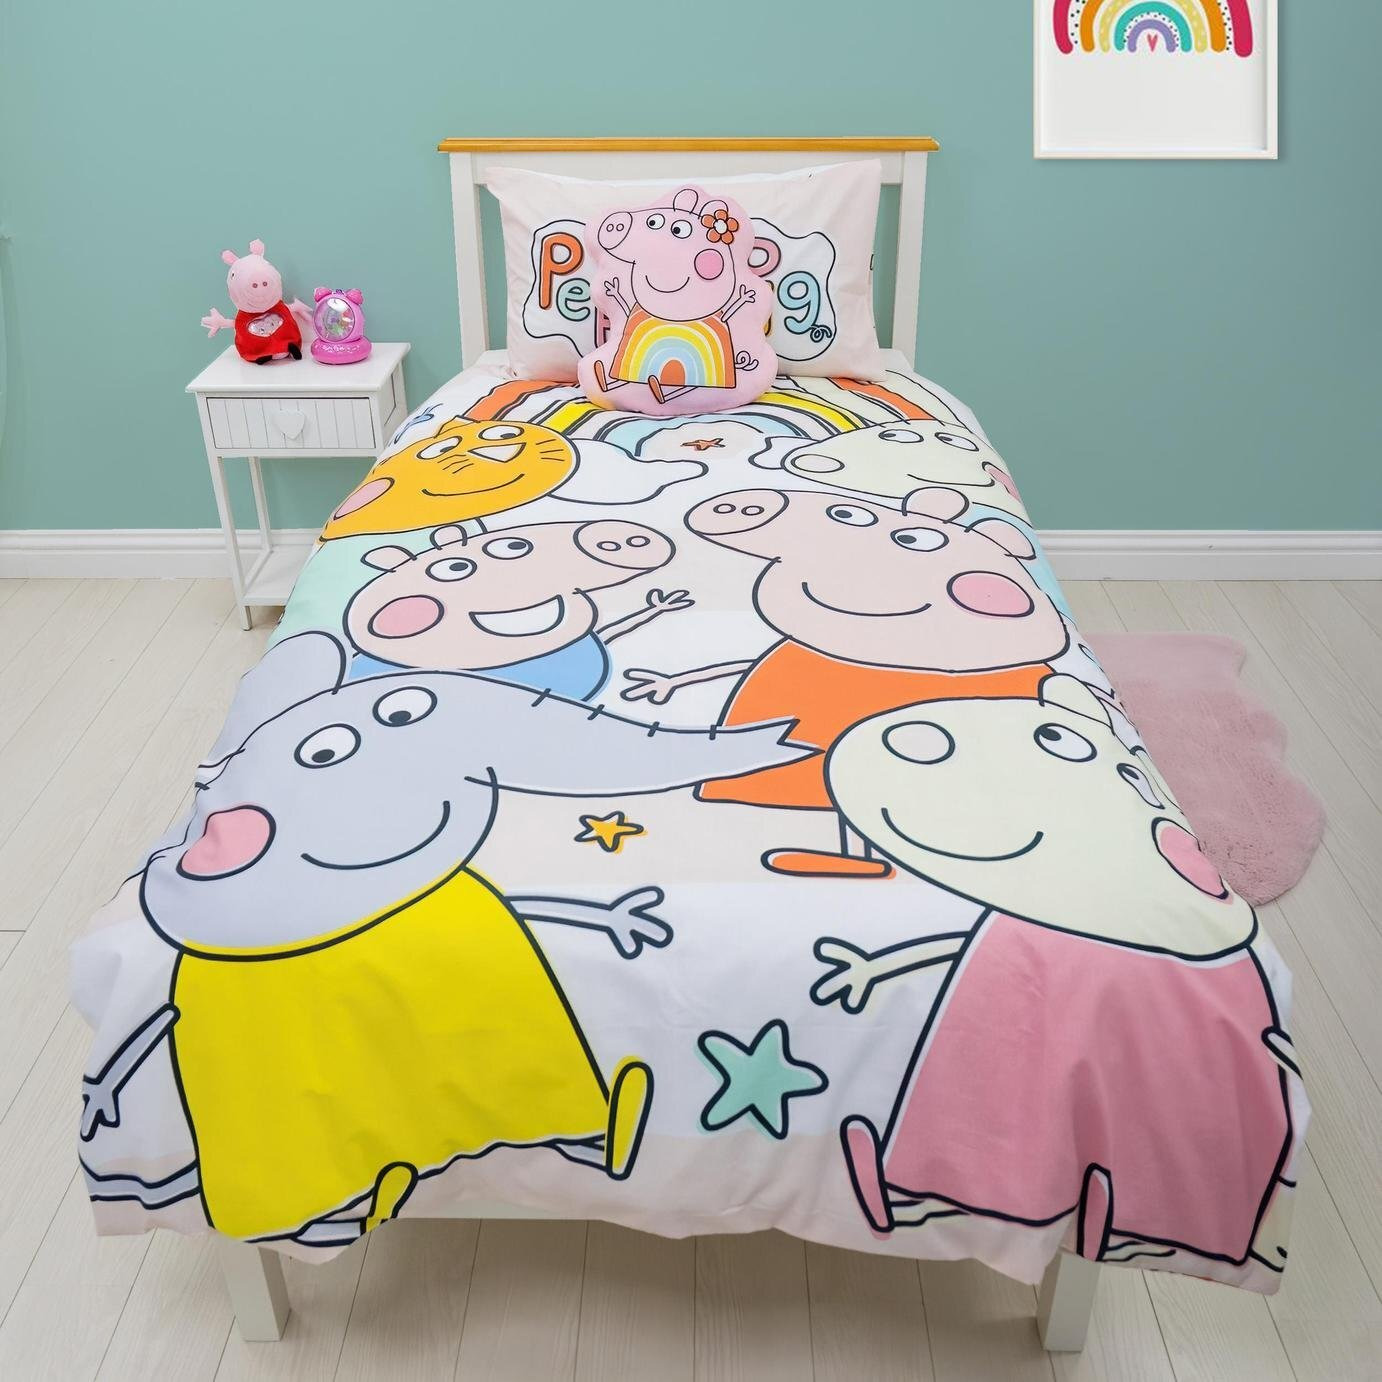 Peppa Pig Kids Bedding Set - Toddler - image 1